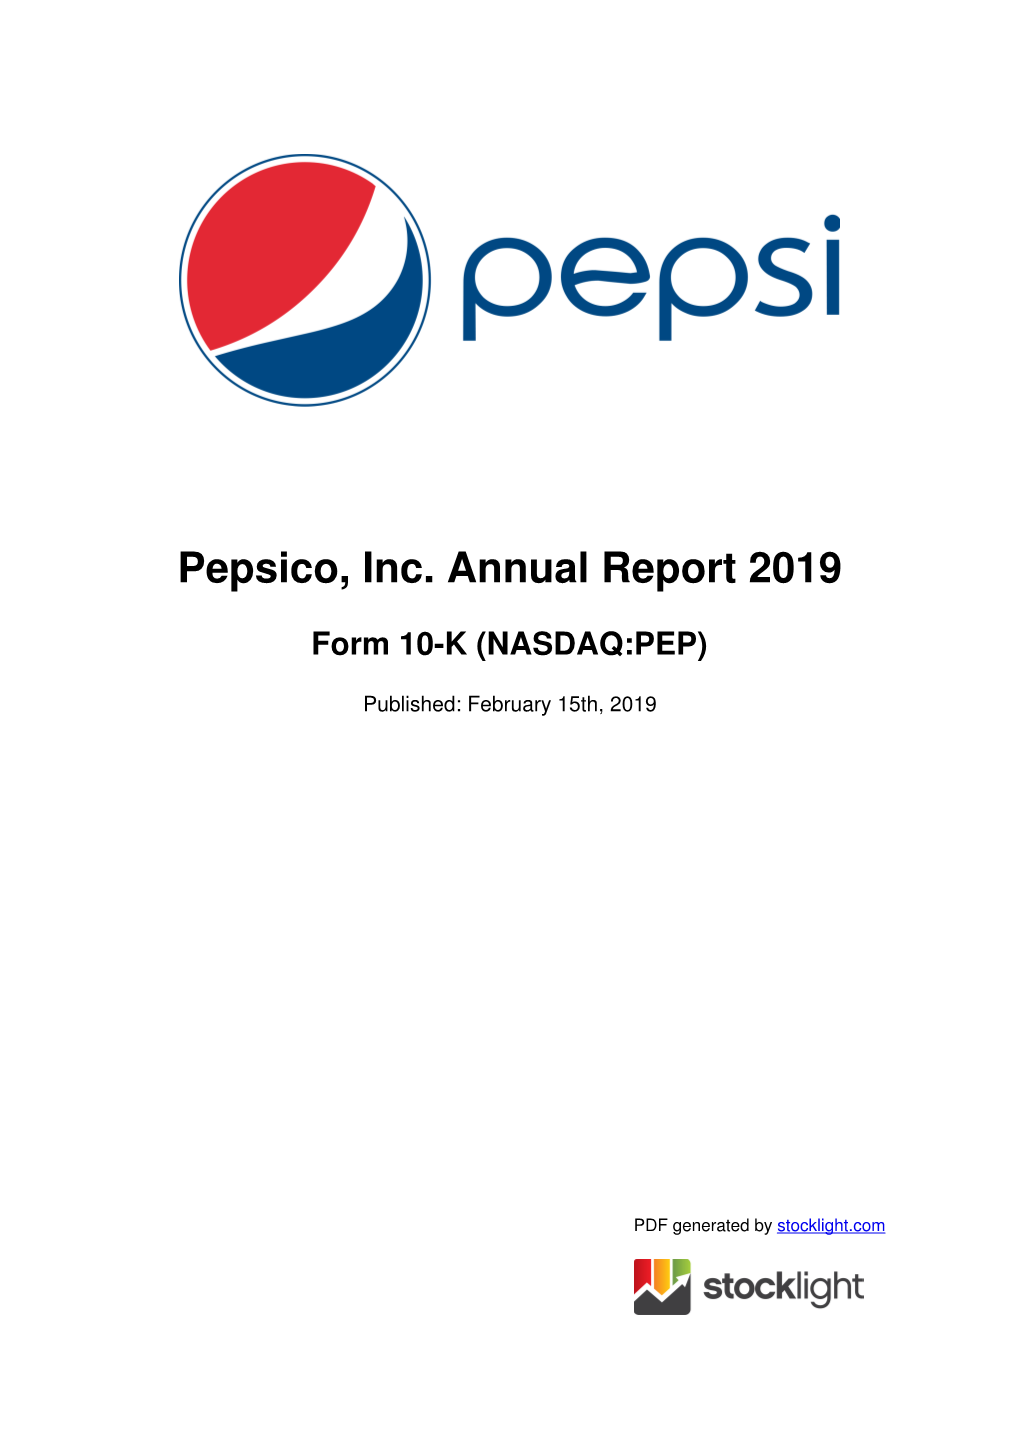 Pepsico, Inc. Annual Report 2019